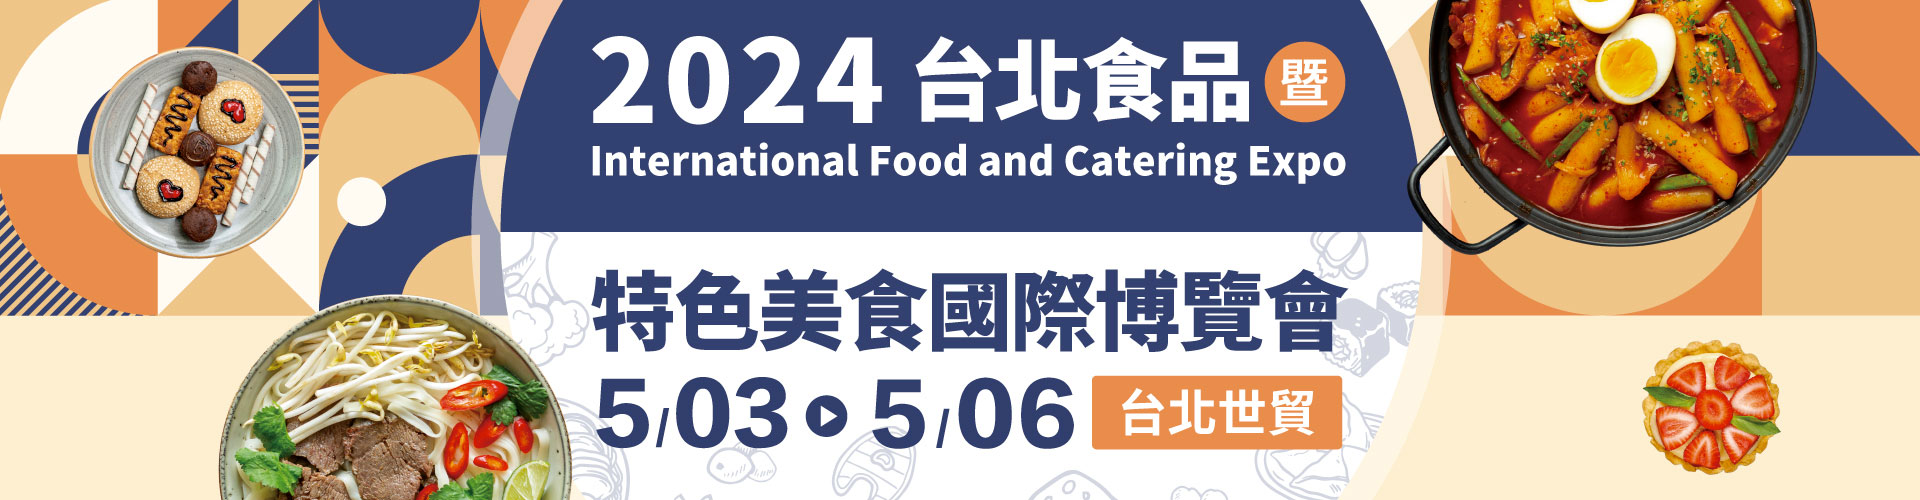 2024台北食品暨特色美食國際博覽會